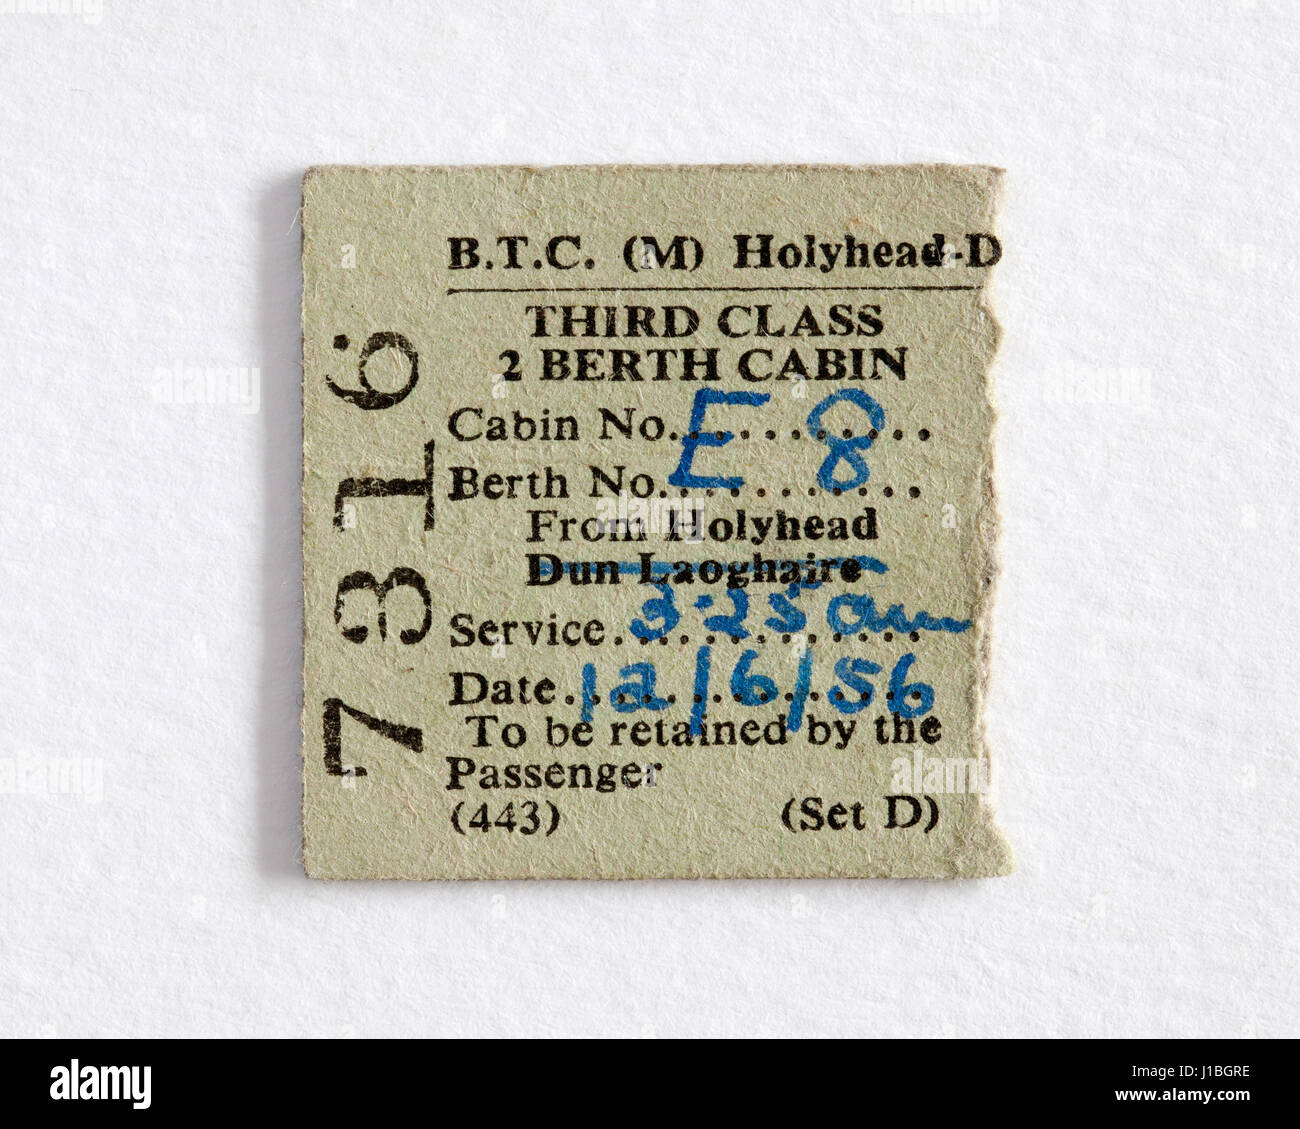 Vecchio Vintage 1956 Holyhead Dublin biglietto del traghetto classe terza cabina - Dun Laoghaire Pernottamento notte Foto Stock